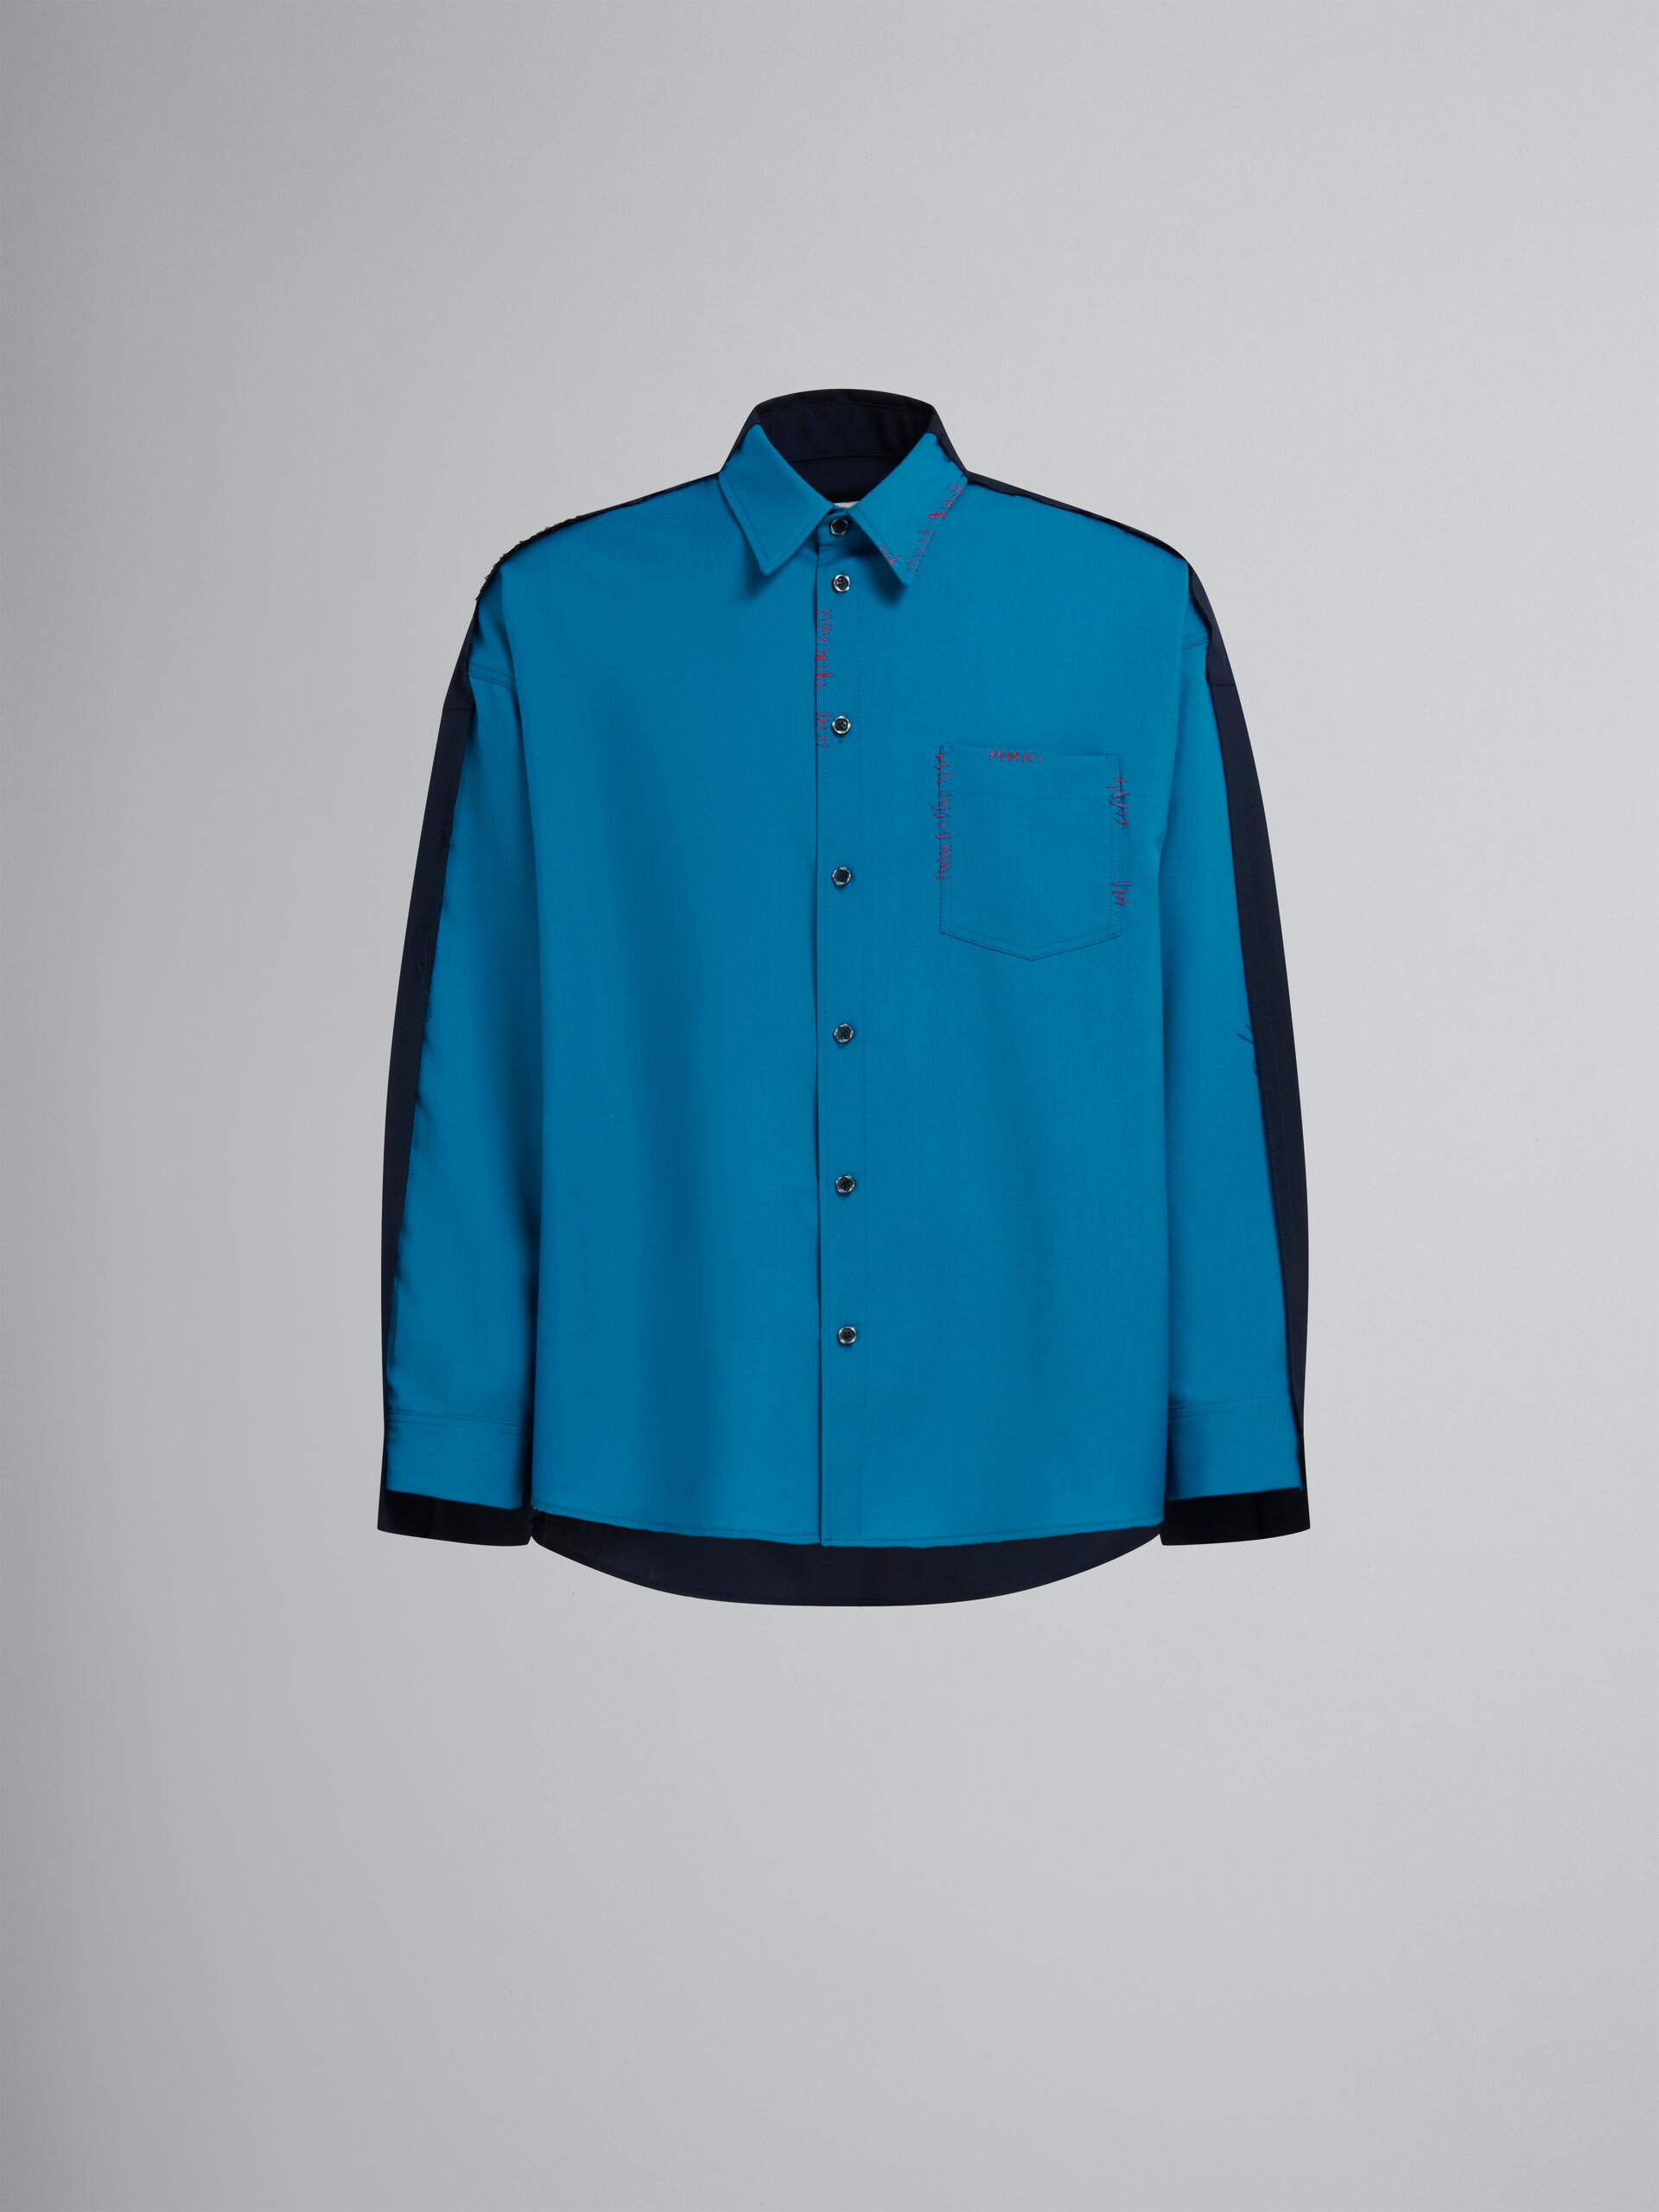 Camisa de lana tropical azul con espalda en contraste - Camisas - Image 1